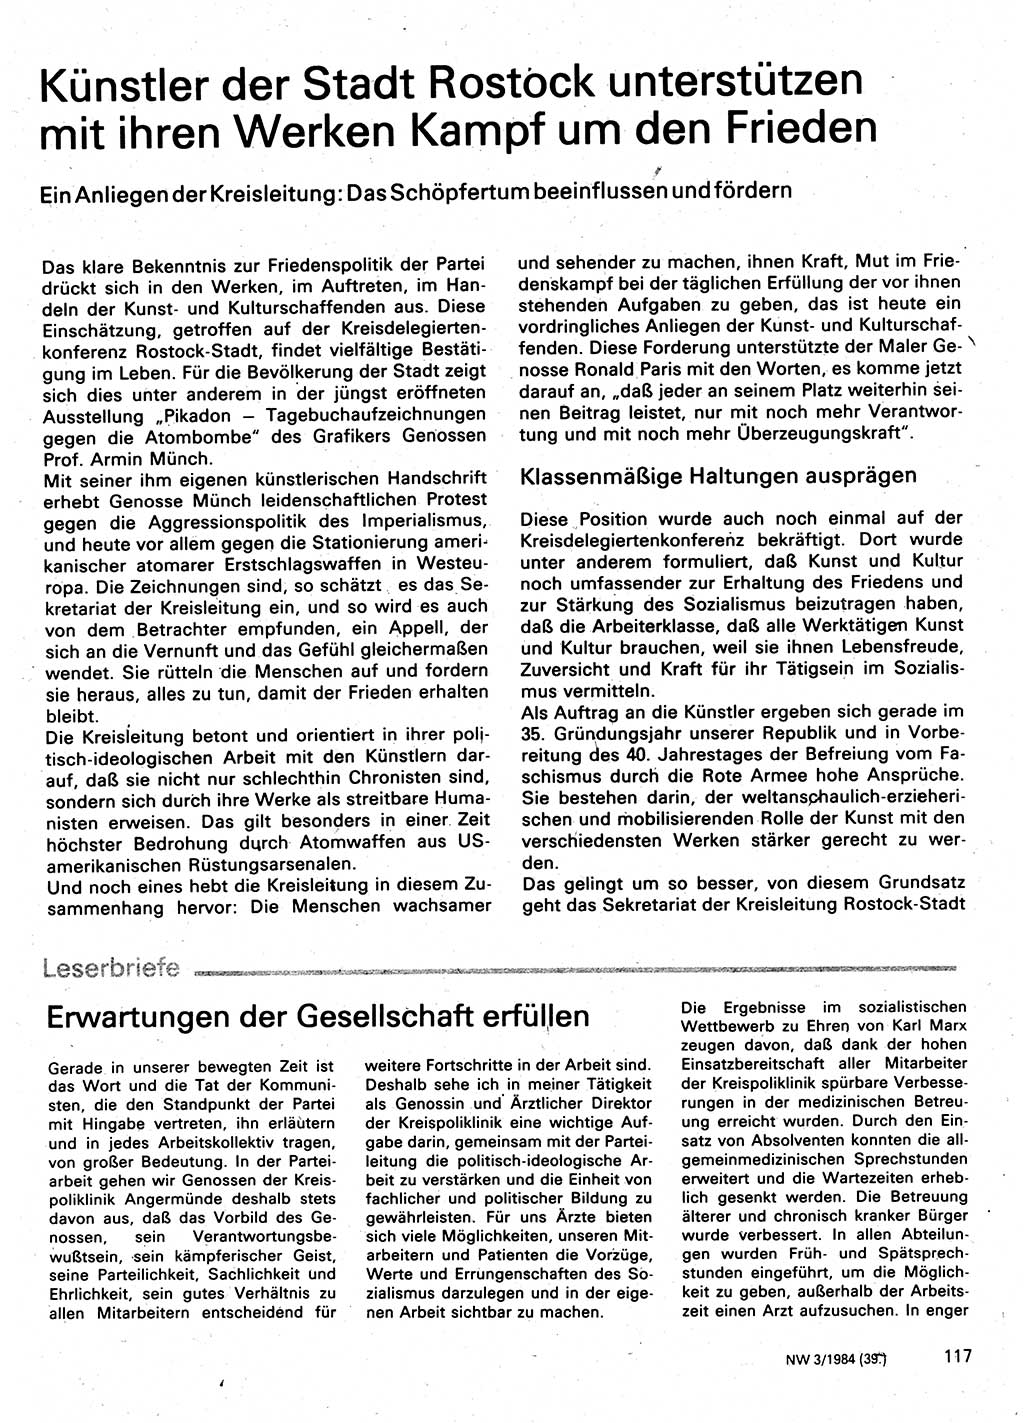 Neuer Weg (NW), Organ des Zentralkomitees (ZK) der SED (Sozialistische Einheitspartei Deutschlands) für Fragen des Parteilebens, 39. Jahrgang [Deutsche Demokratische Republik (DDR)] 1984, Seite 117 (NW ZK SED DDR 1984, S. 117)